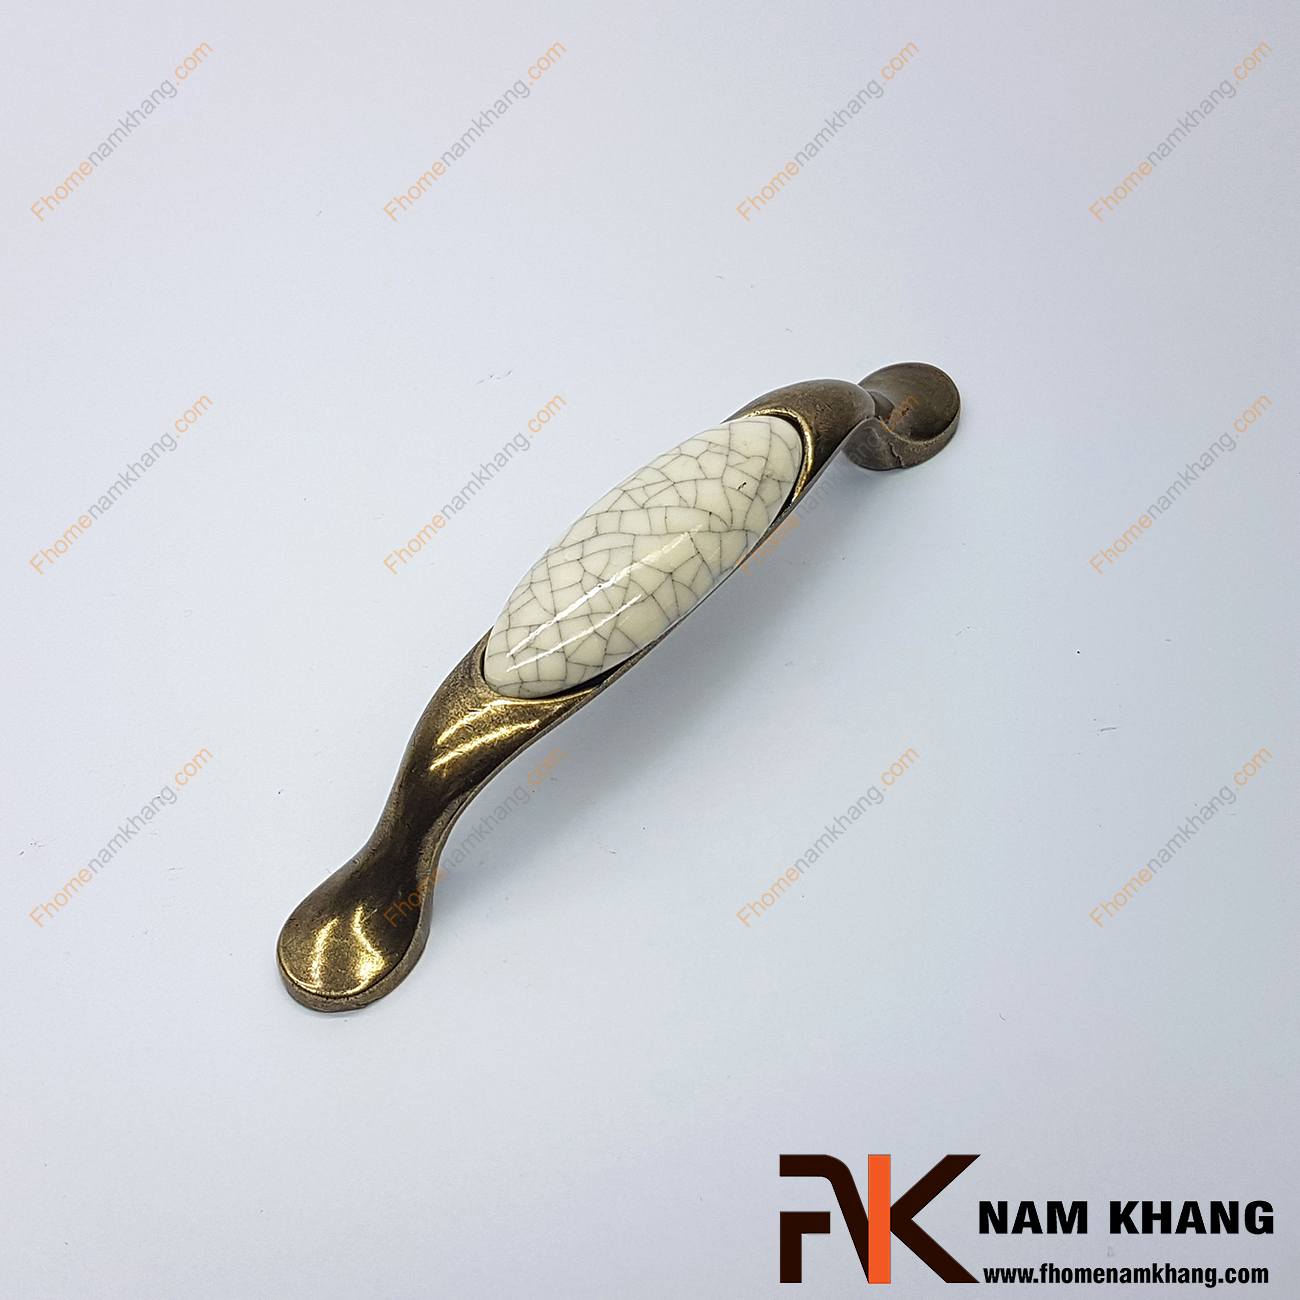 Sản phẩm Tay nắm tủ cổ điển phối sứ NK360-96VC2 thuộc dạng tay nắm kết hợp từ 2 chất liệu quen thuộc là hợp kim mạ đồng cổ và sứ cao cấp